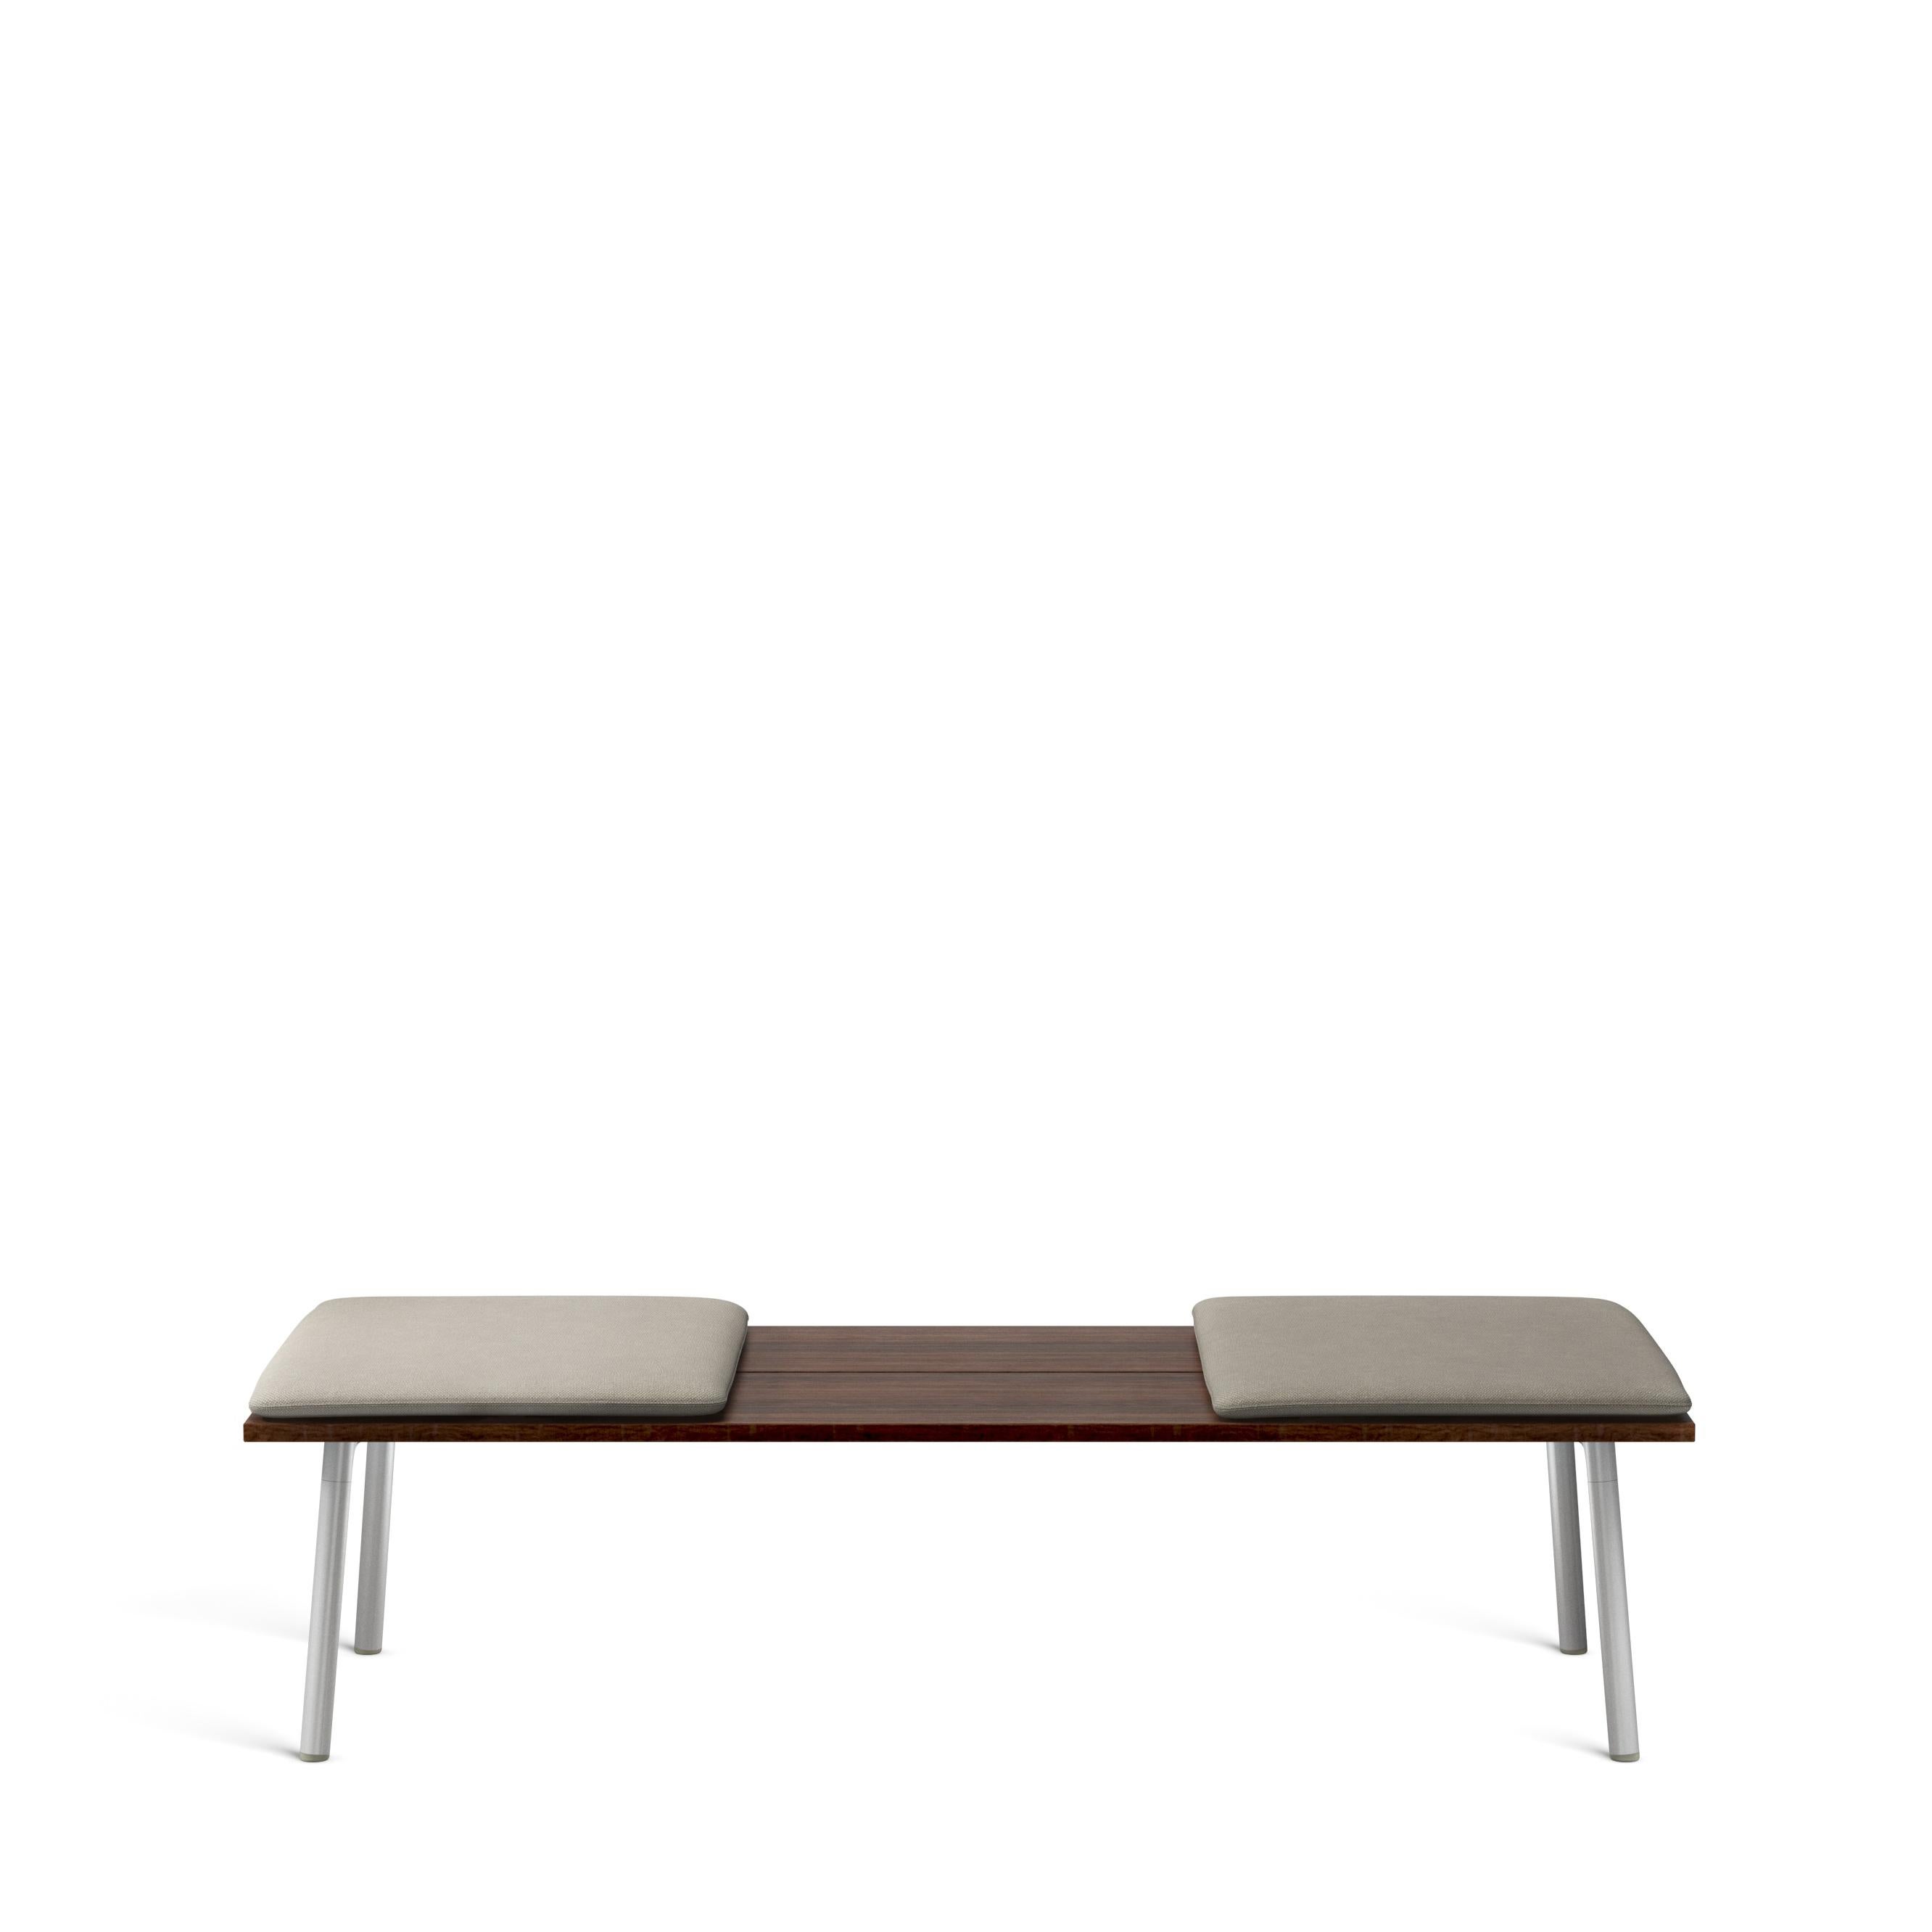 Run est une collection de tables, de bancs et d'étagères de Sam Hecht et Kim Colin, designers de la simplicité et du non-sens. Run trouve sans effort l'équilibre dans des paysages intérieurs et extérieurs adaptés à la rencontre, au repas, à